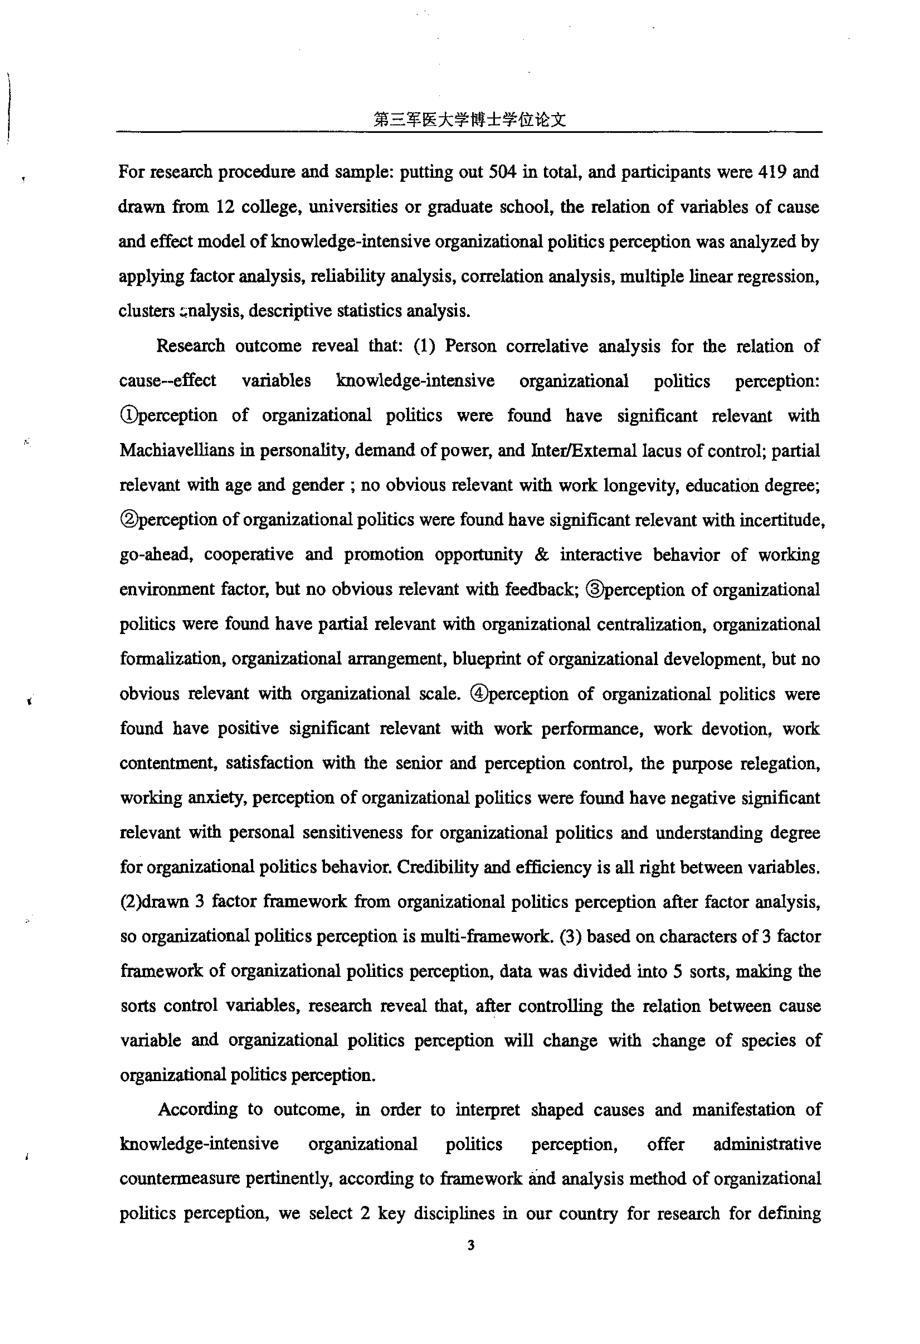 知识密集型组织若干组织政治行为及其政治知觉模型的构建与实证研究——以重点学科为例_第4页